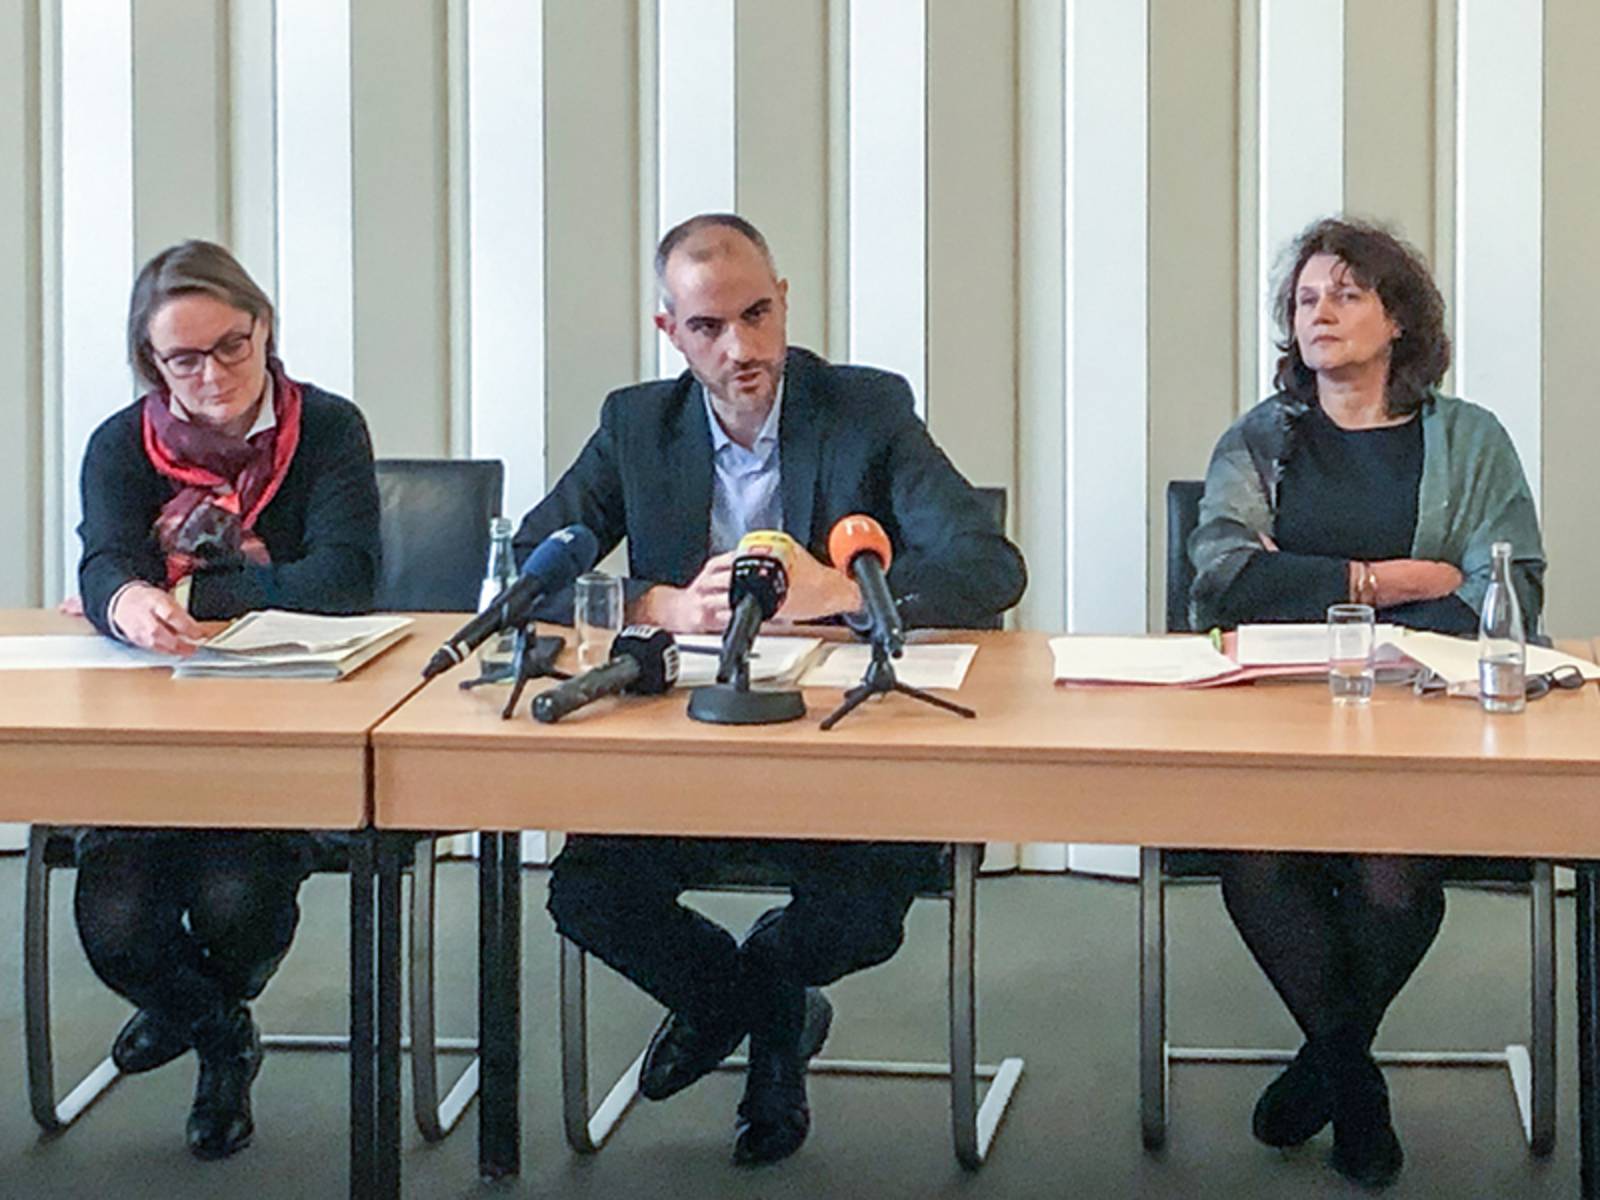 Drei Personen sitzend an einem Tisch während einer Pressekonferenz